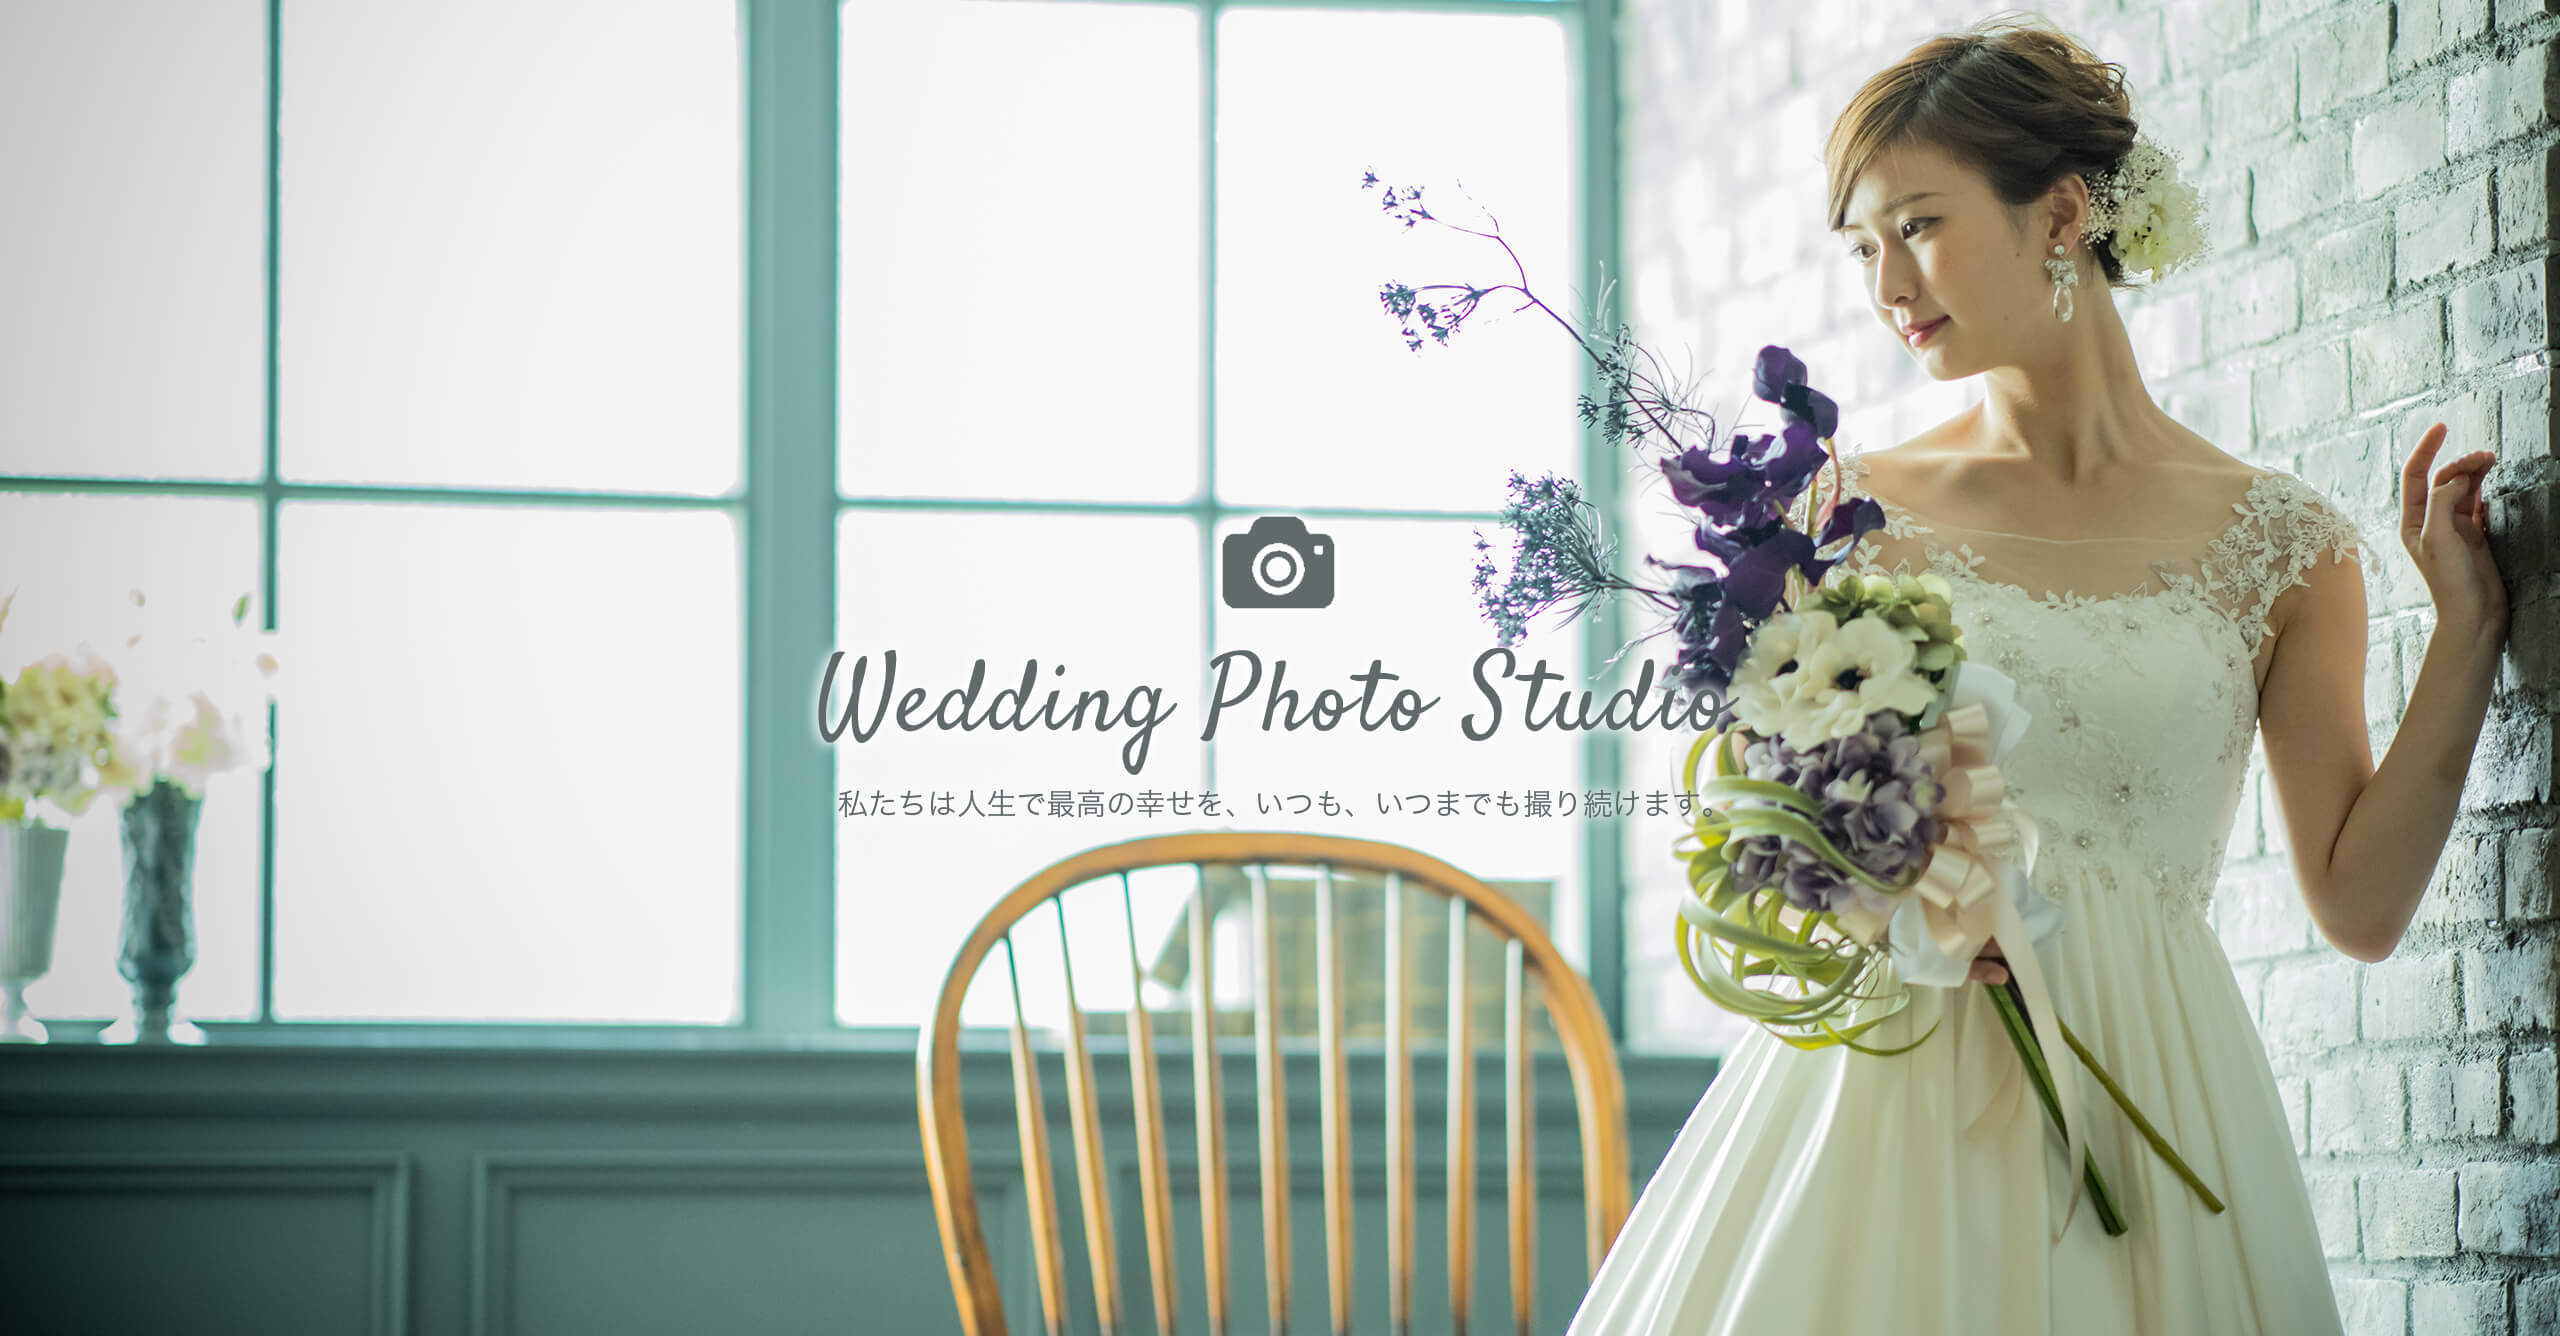 レンガ造りの壁を背に、白のウェディングドレスを着て、鮮やかな色の花のブーケを持って立つ花嫁のフォトウェディングのイメージ｜～Wedding Photo Studio～ 私たちは人生で最高の幸せを、いつも、いつまでも撮り続けます。